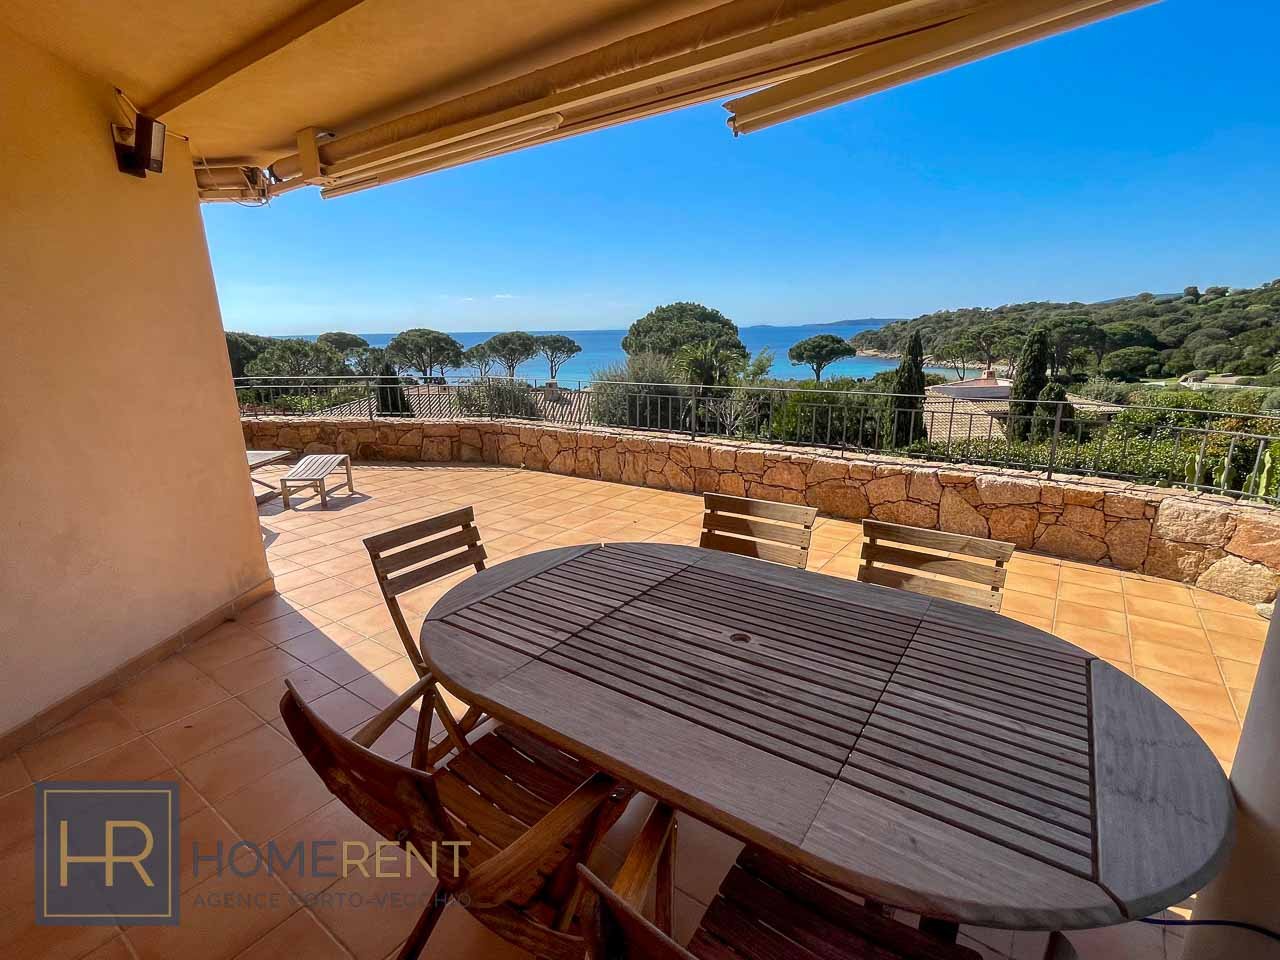 Location villa Porto Vecchio Domaine Capicciola luxe piscine vue mer 3 chambres 6 couchages pieds dans l’eau plage à 50 mètres contemporaine vacances en Corse du sud